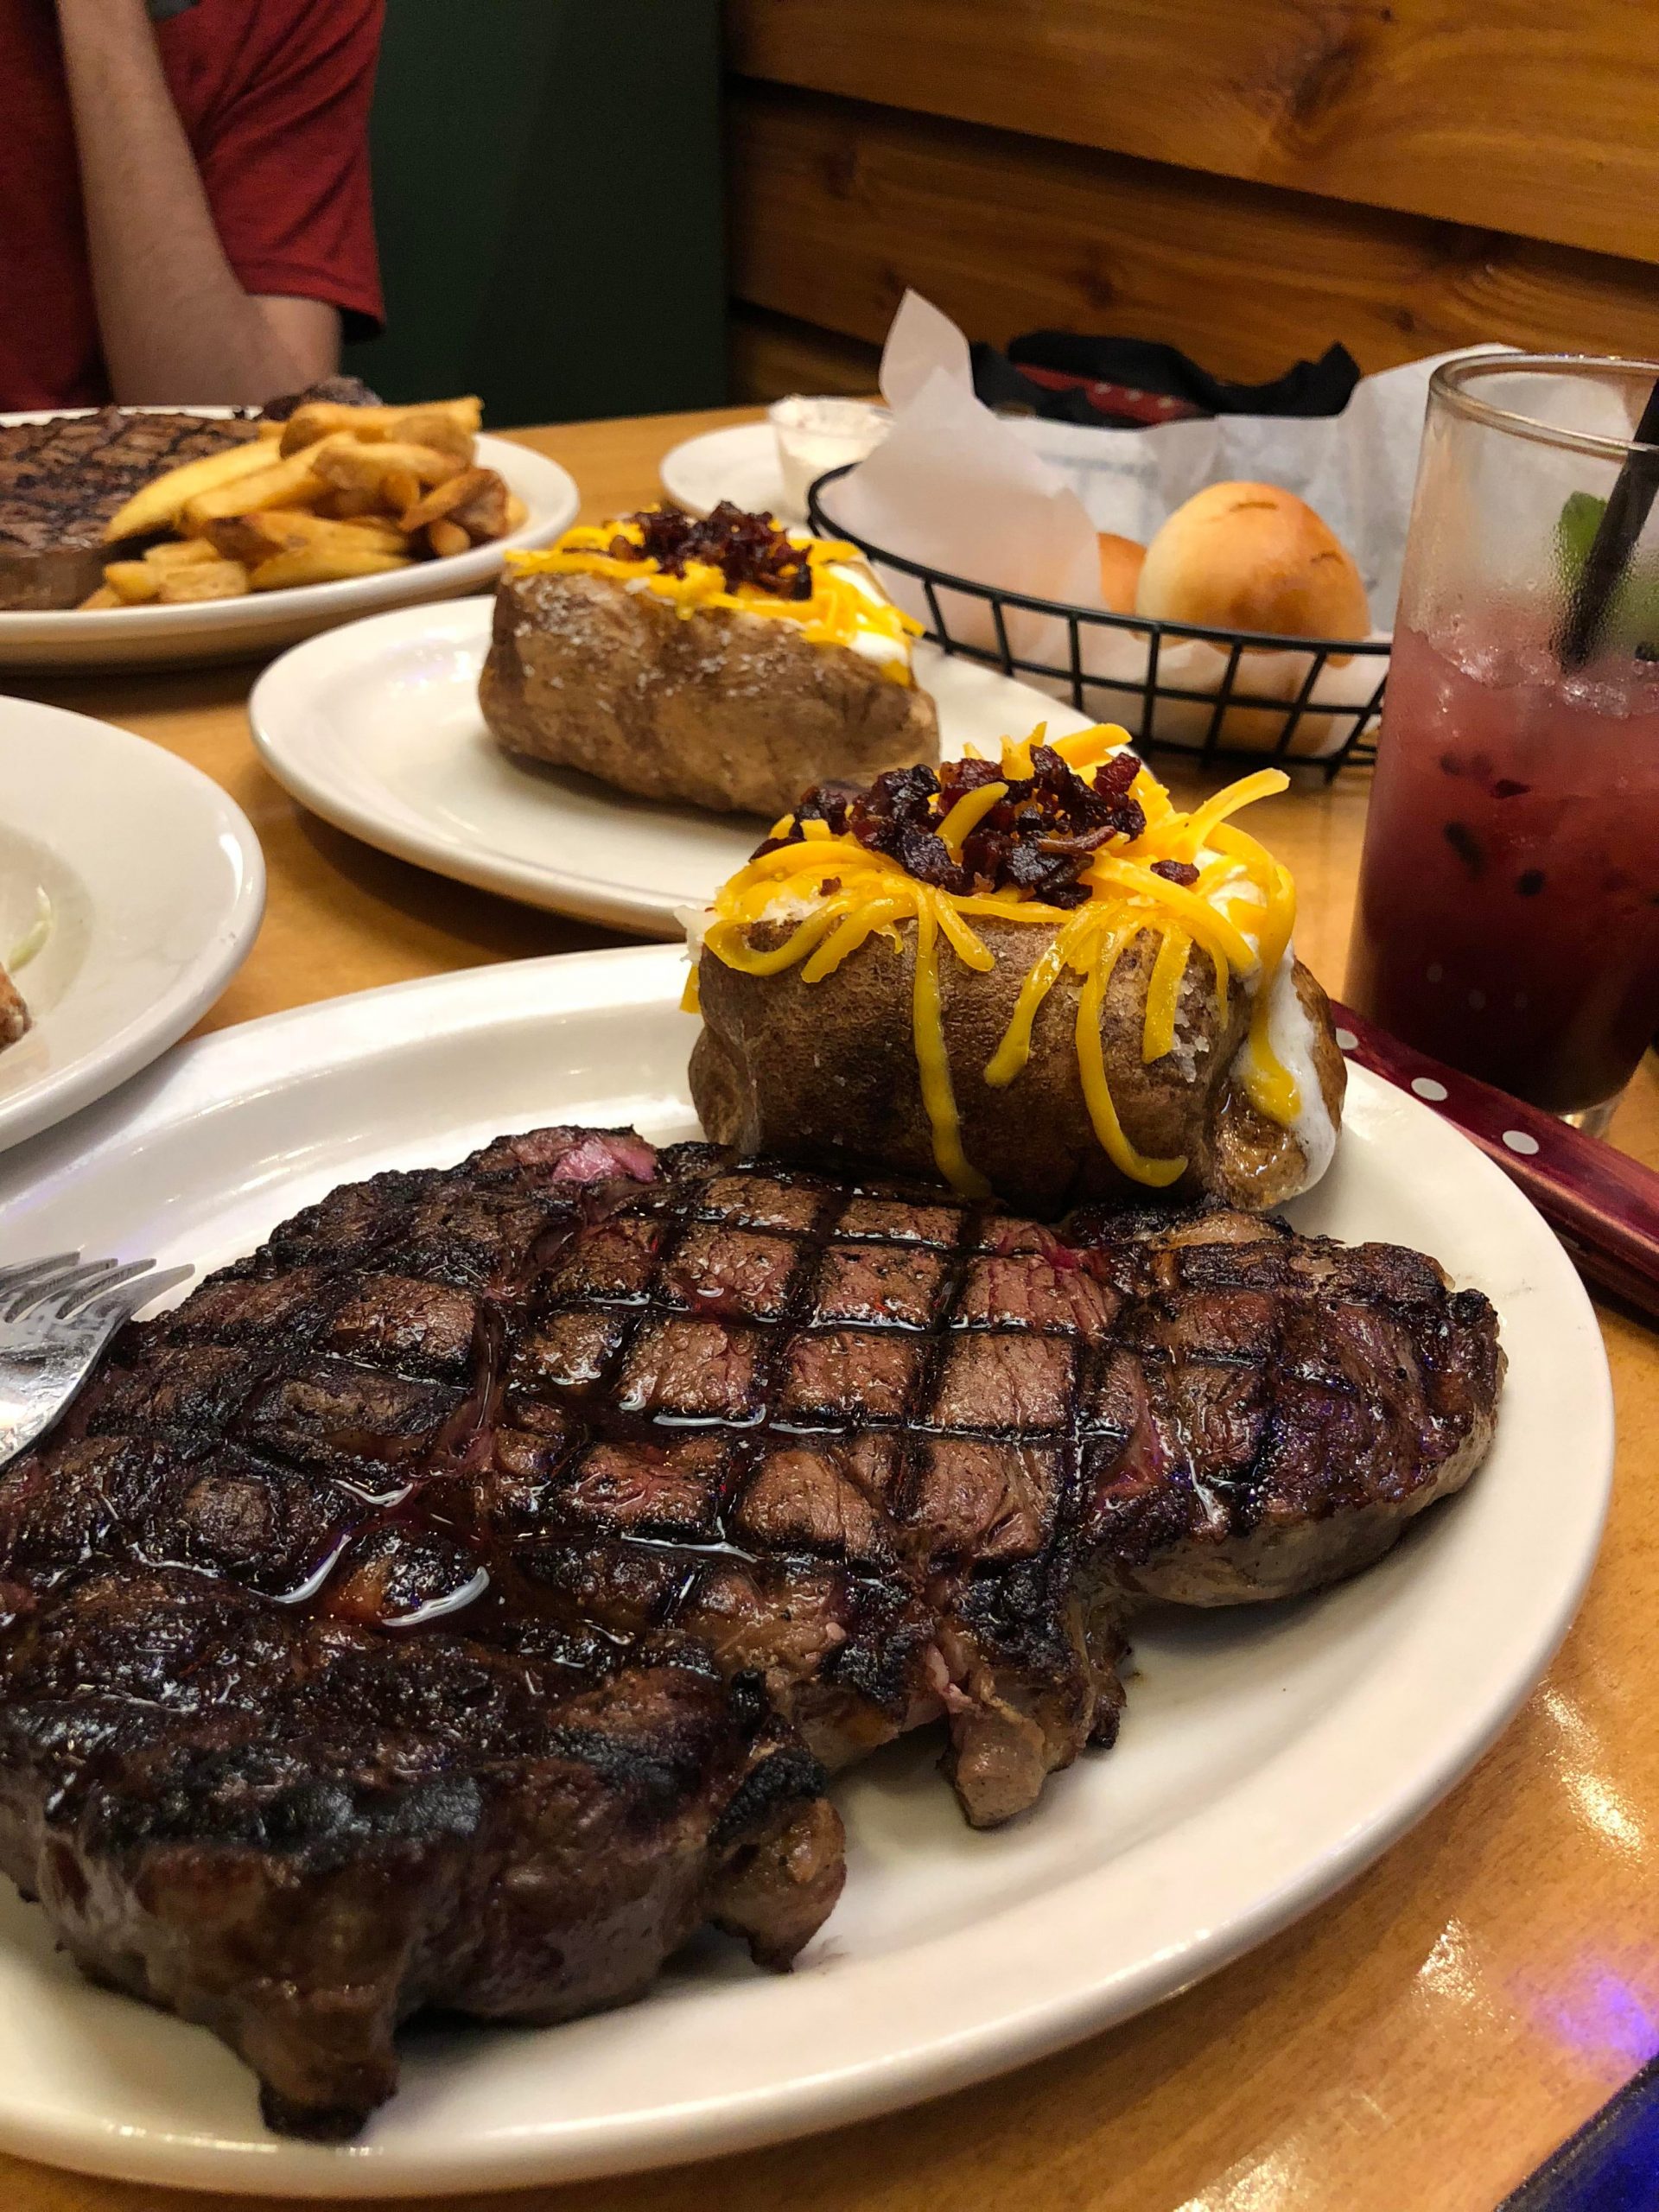 24Oz Ribeye at Texas Roadhouse : steak